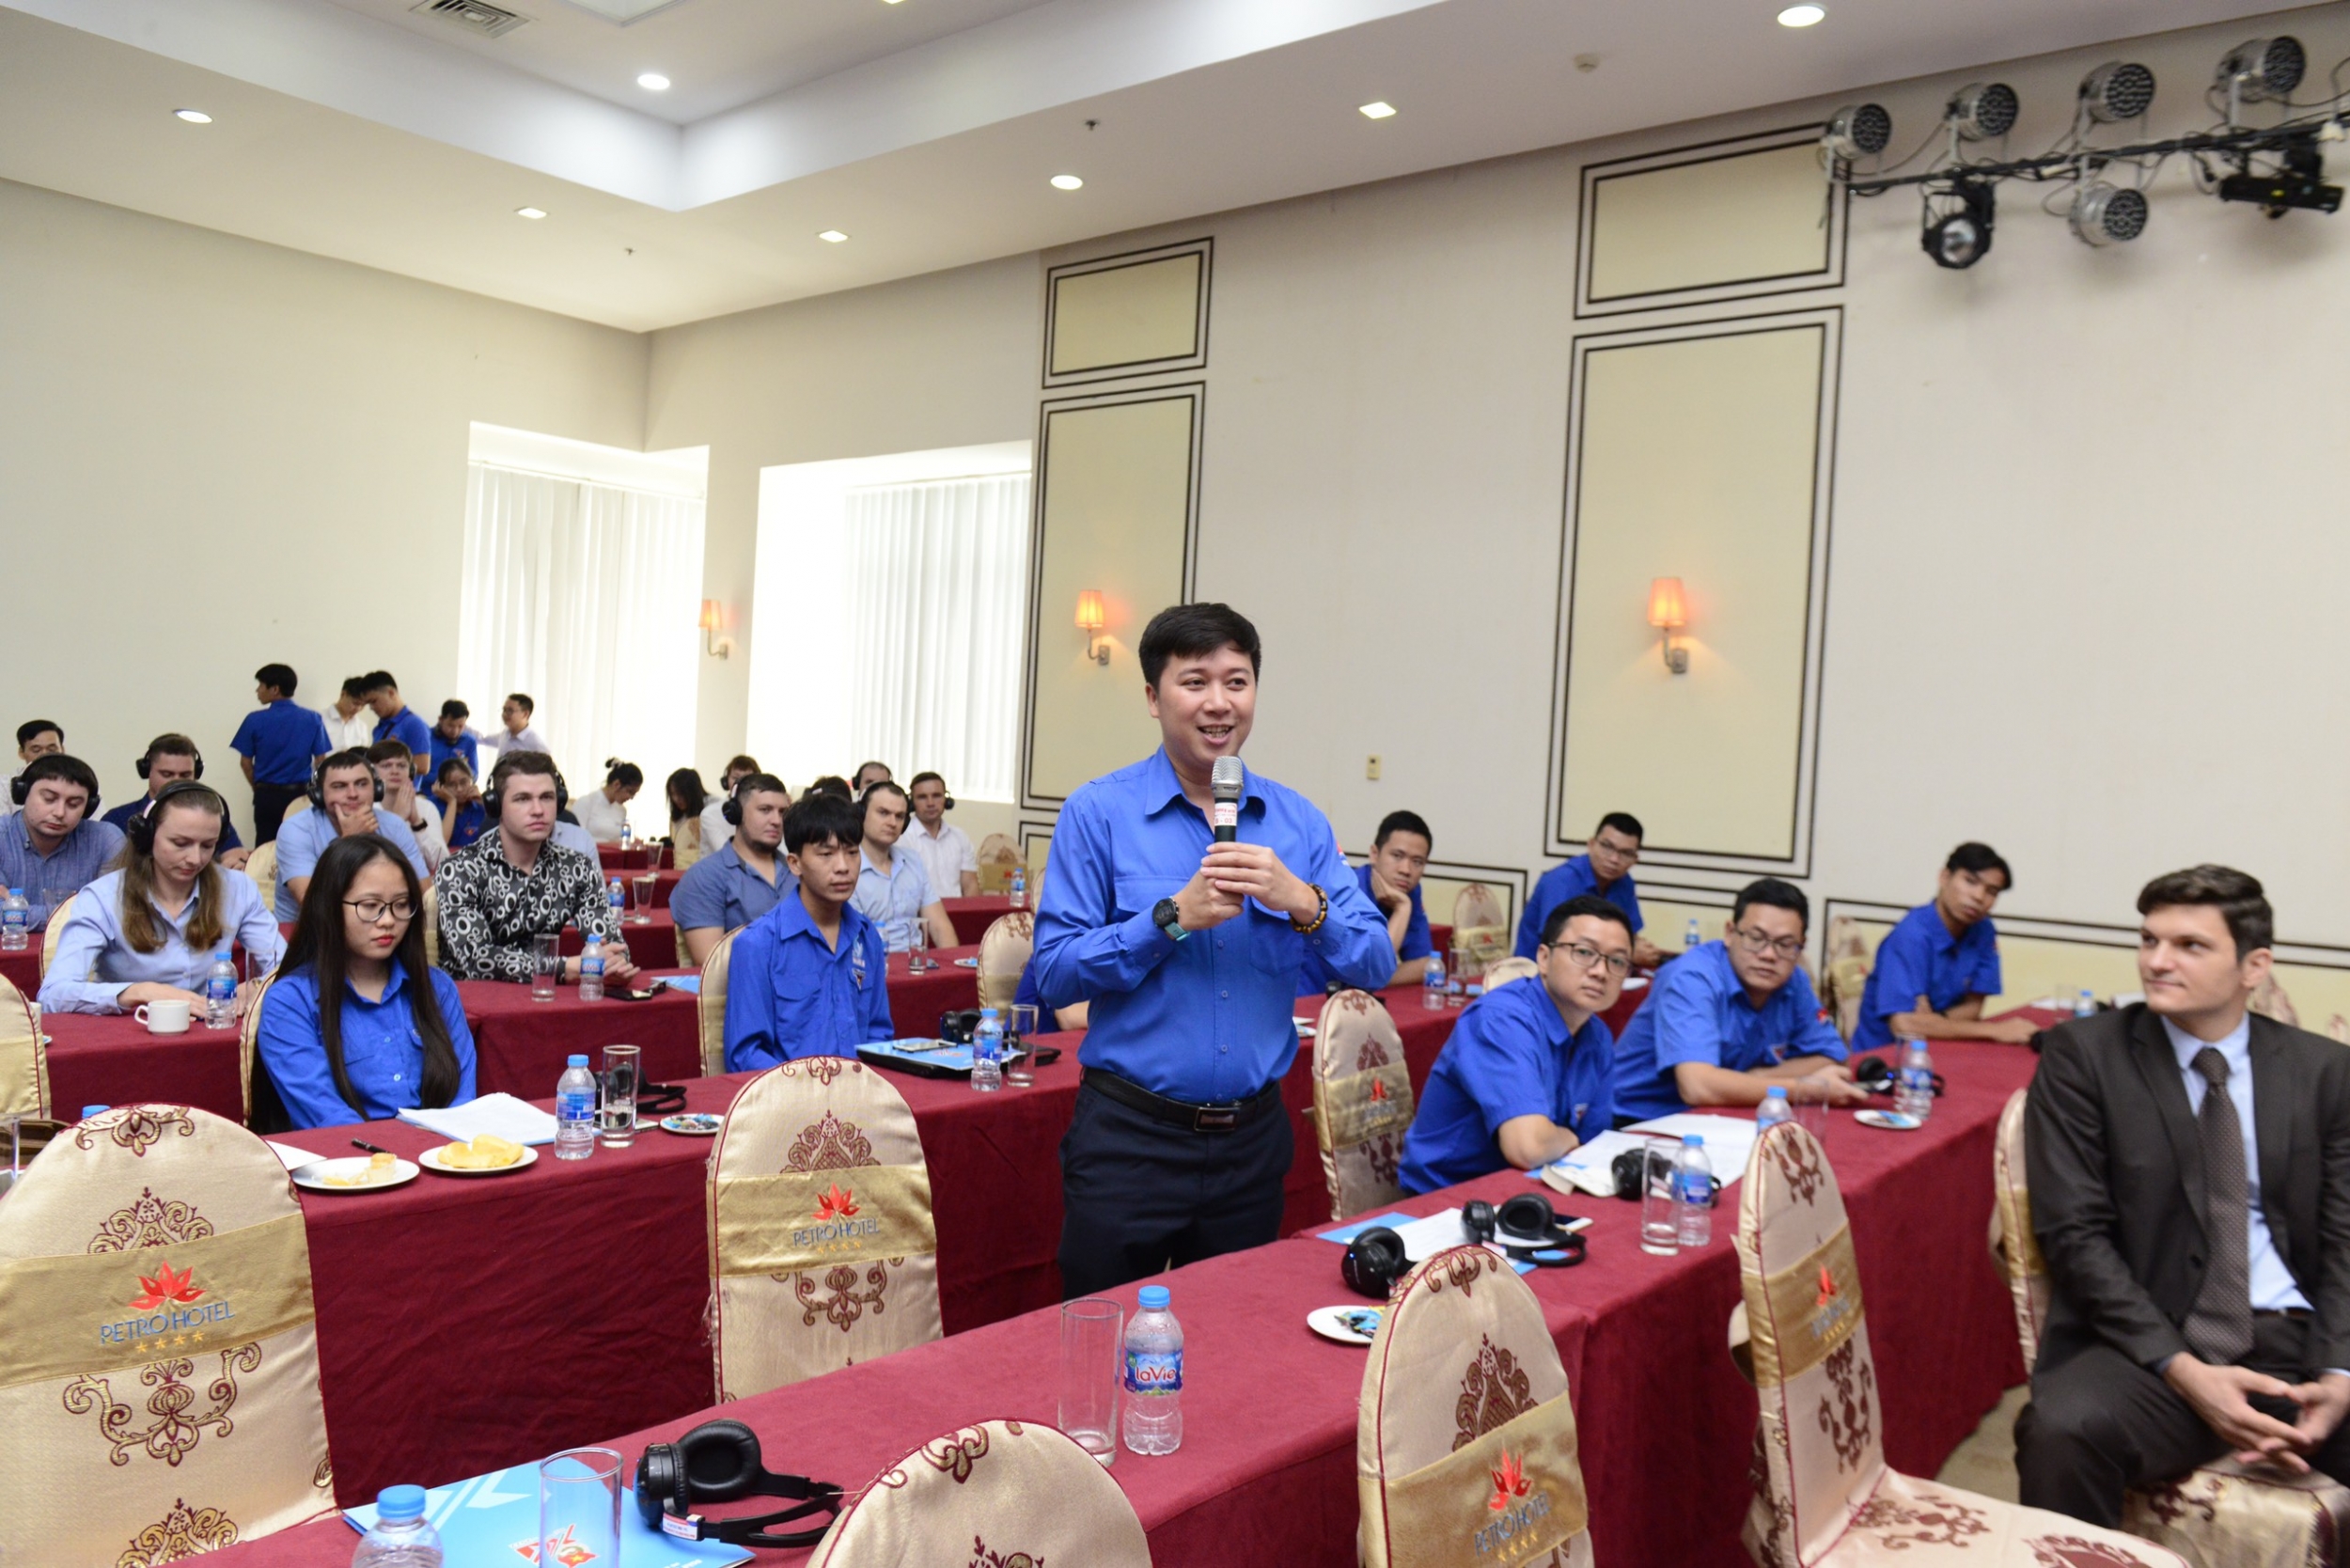 Tuổi trẻ Vietsovpetro phối hợp tổ chức chương trình Giao lưu hữu nghị thanh niên Việt Nam - Liên bang Nga 2020